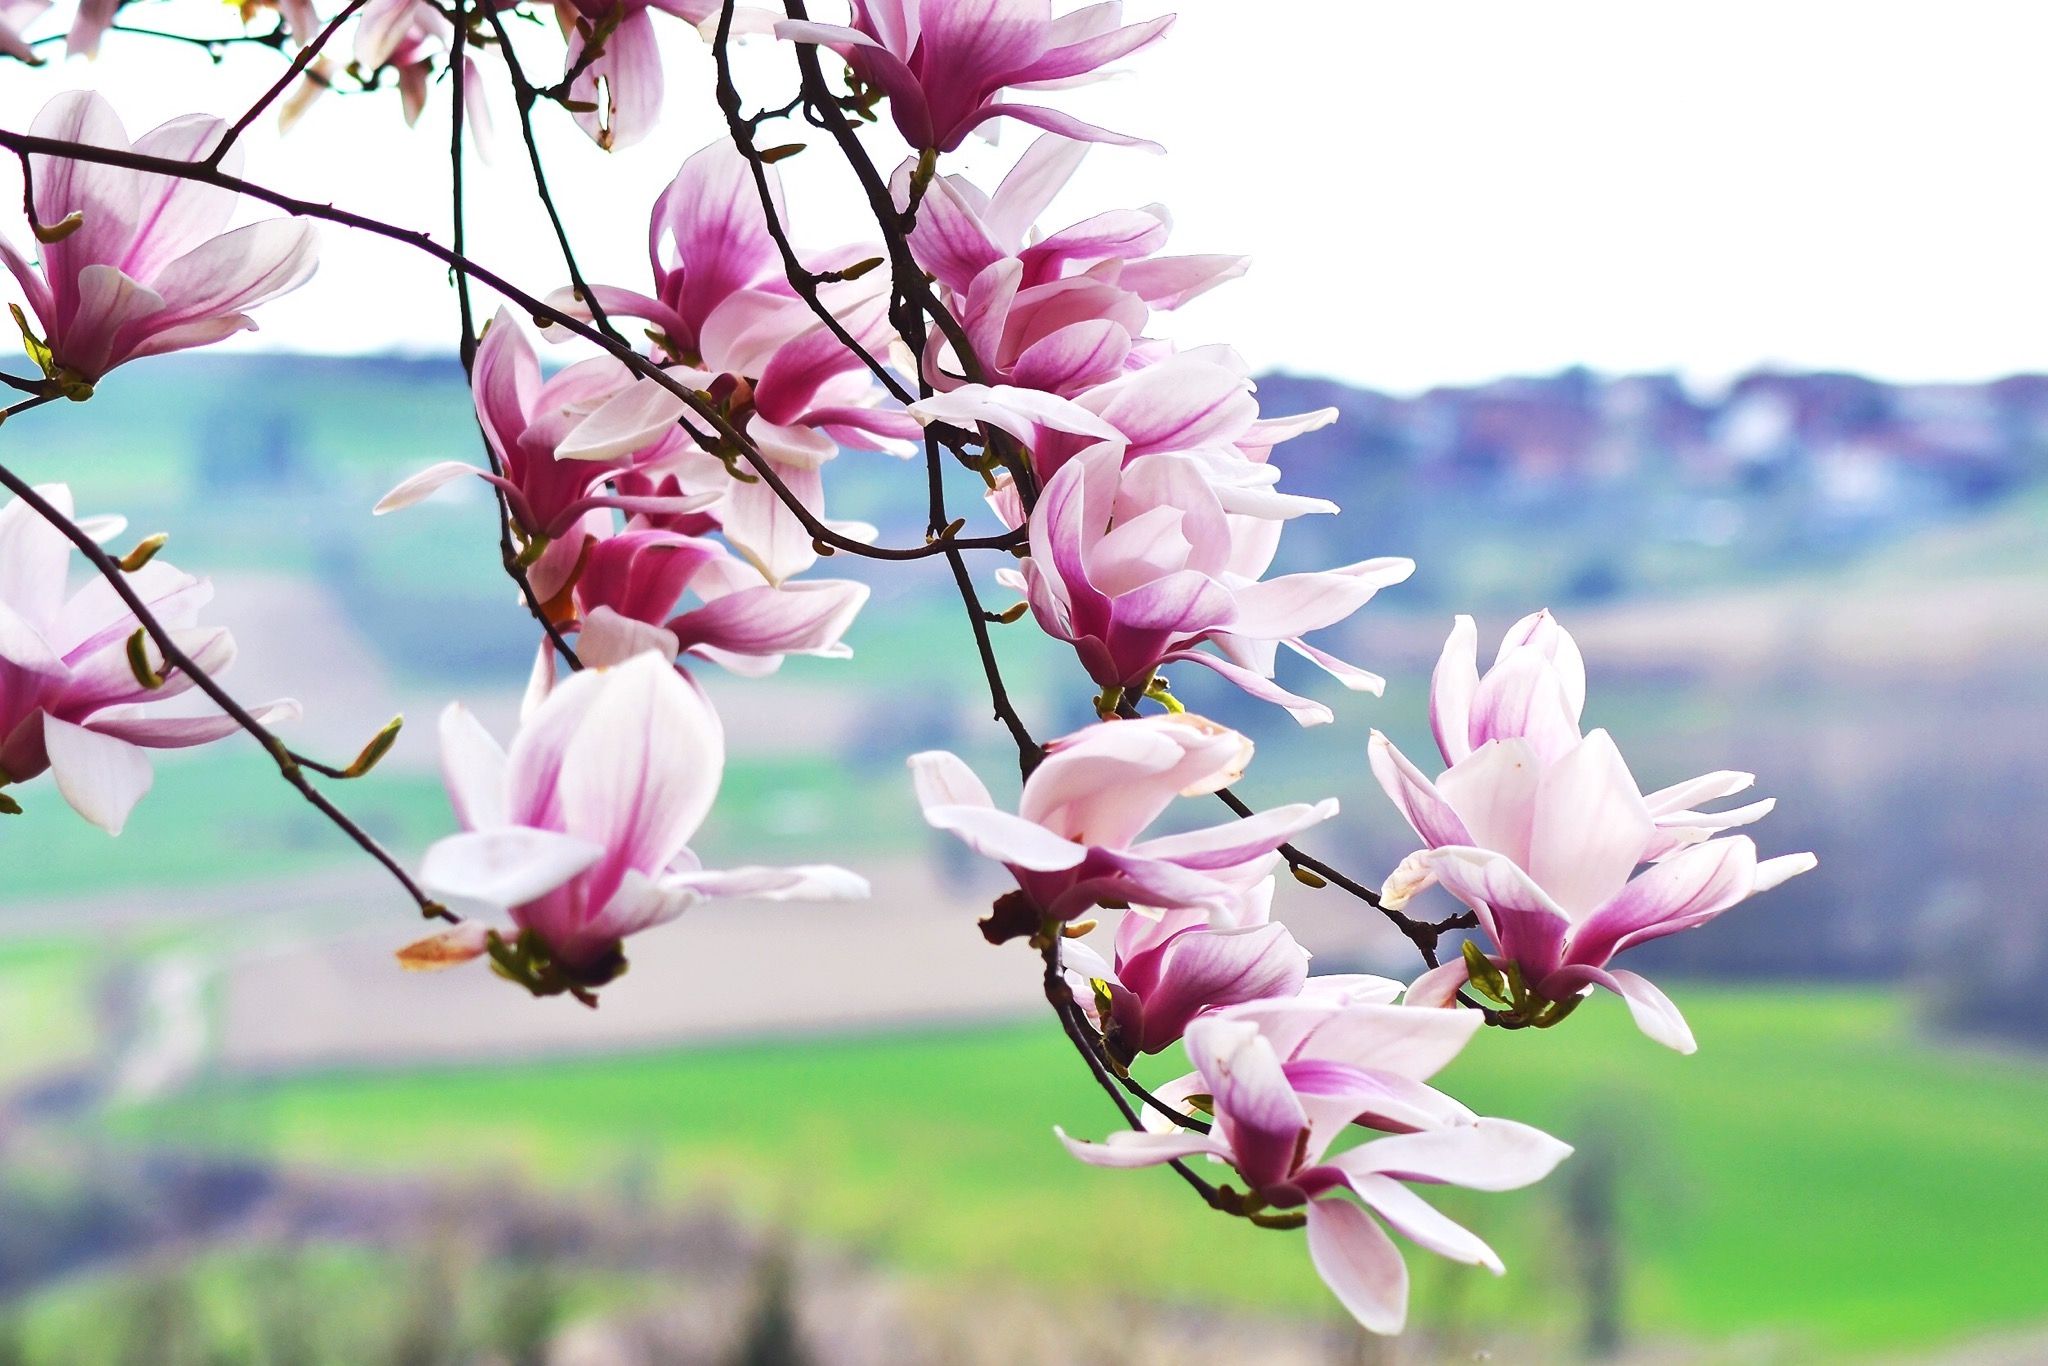 Magnolie düngen So wird Ihr Magnolienbaum prächtig im Frühling blühen